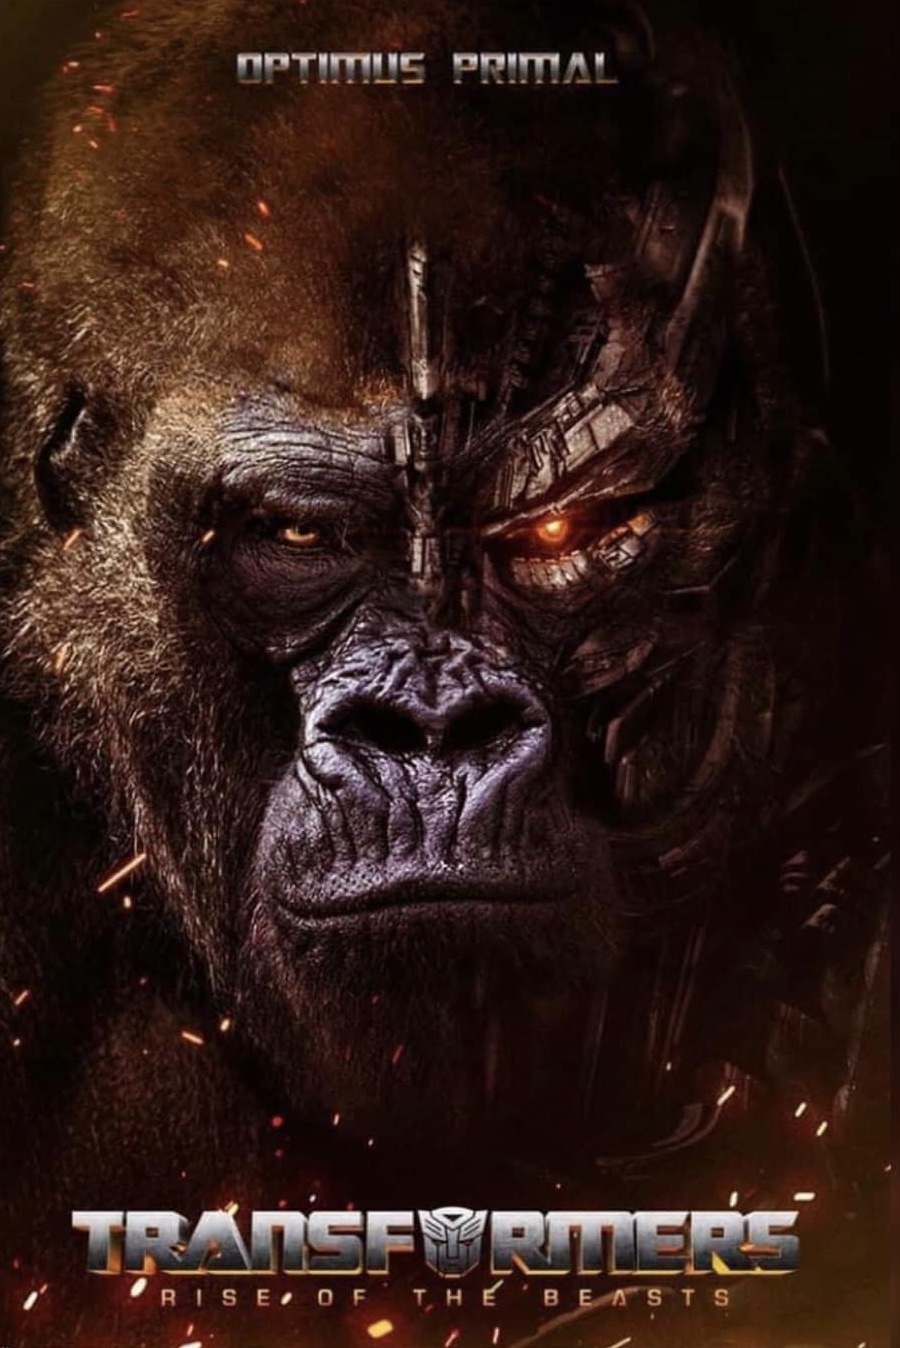 Ver y descargar ‘Transformers: El despertar de las bestias’ | Torrent, Mega y cines